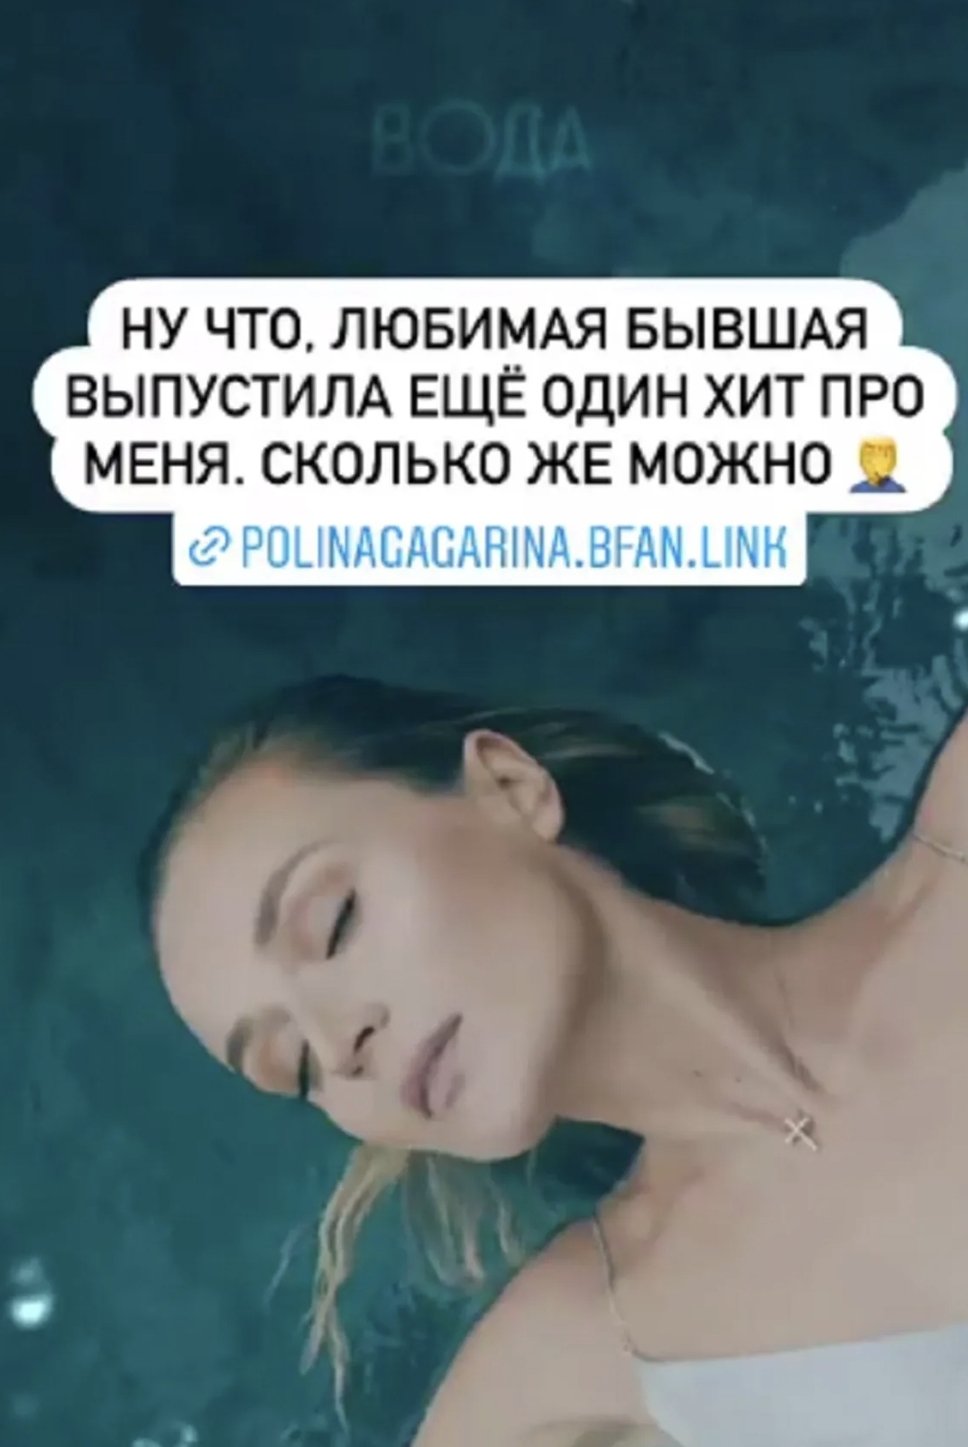 "Сколько можно": Дмитрий Исхаков решил, что Полина Гагарина посвятила ему песню